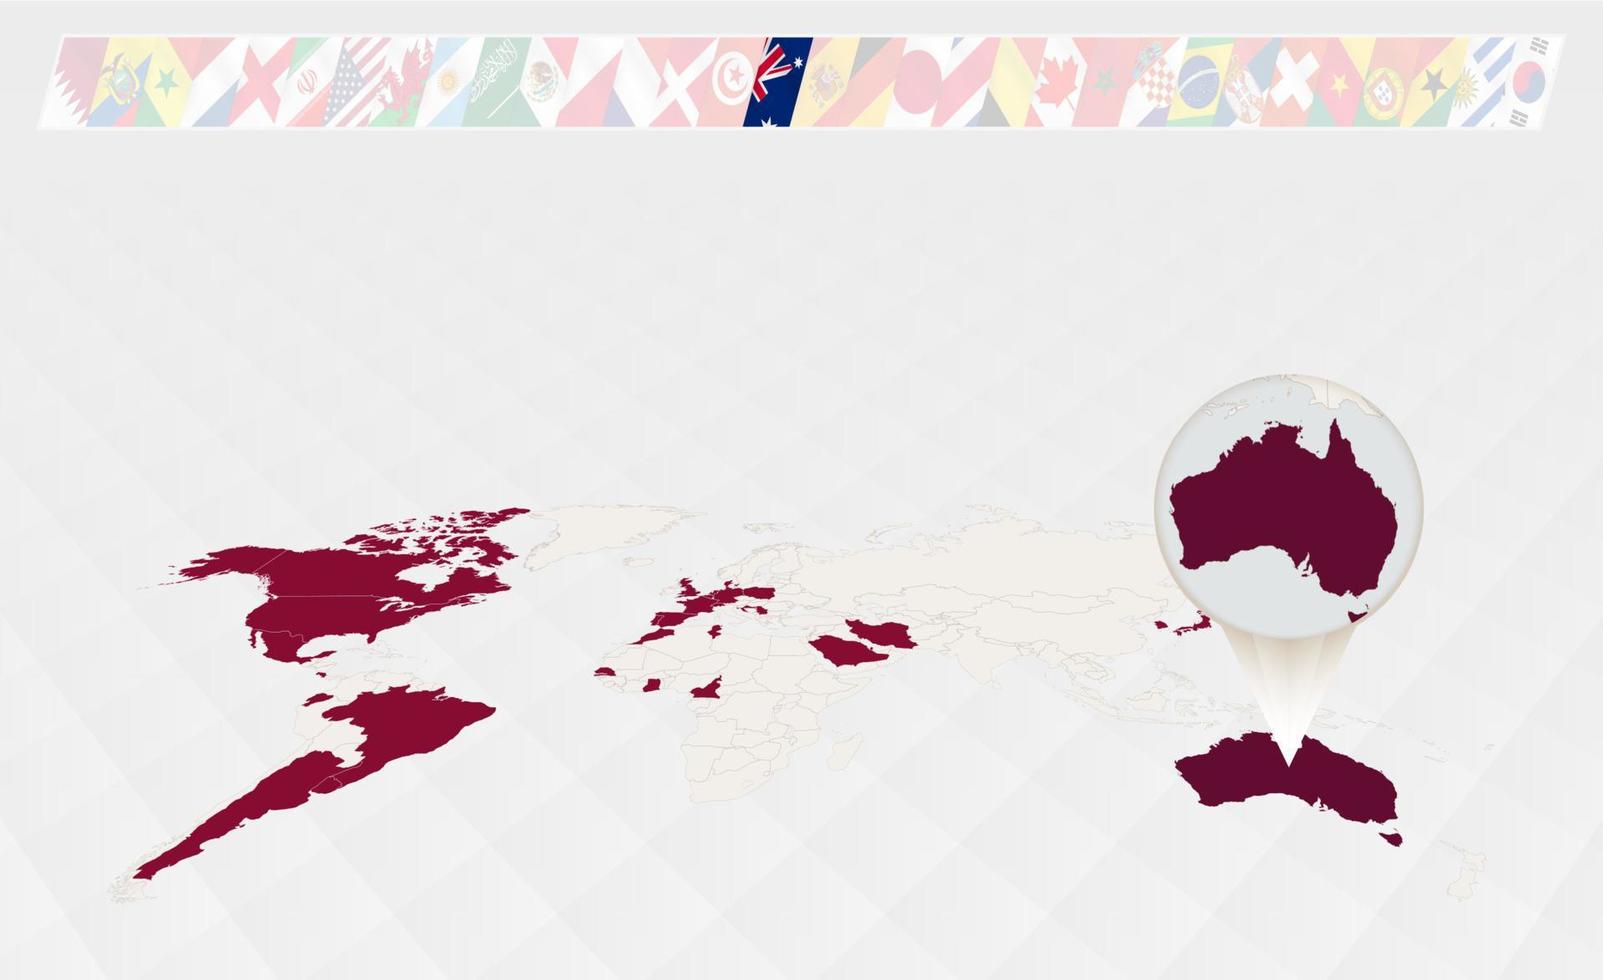 ampliar o mapa da austrália selecionado no mapa-múndi em perspectiva, infográficos sobre os participantes do torneio de futebol. vetor